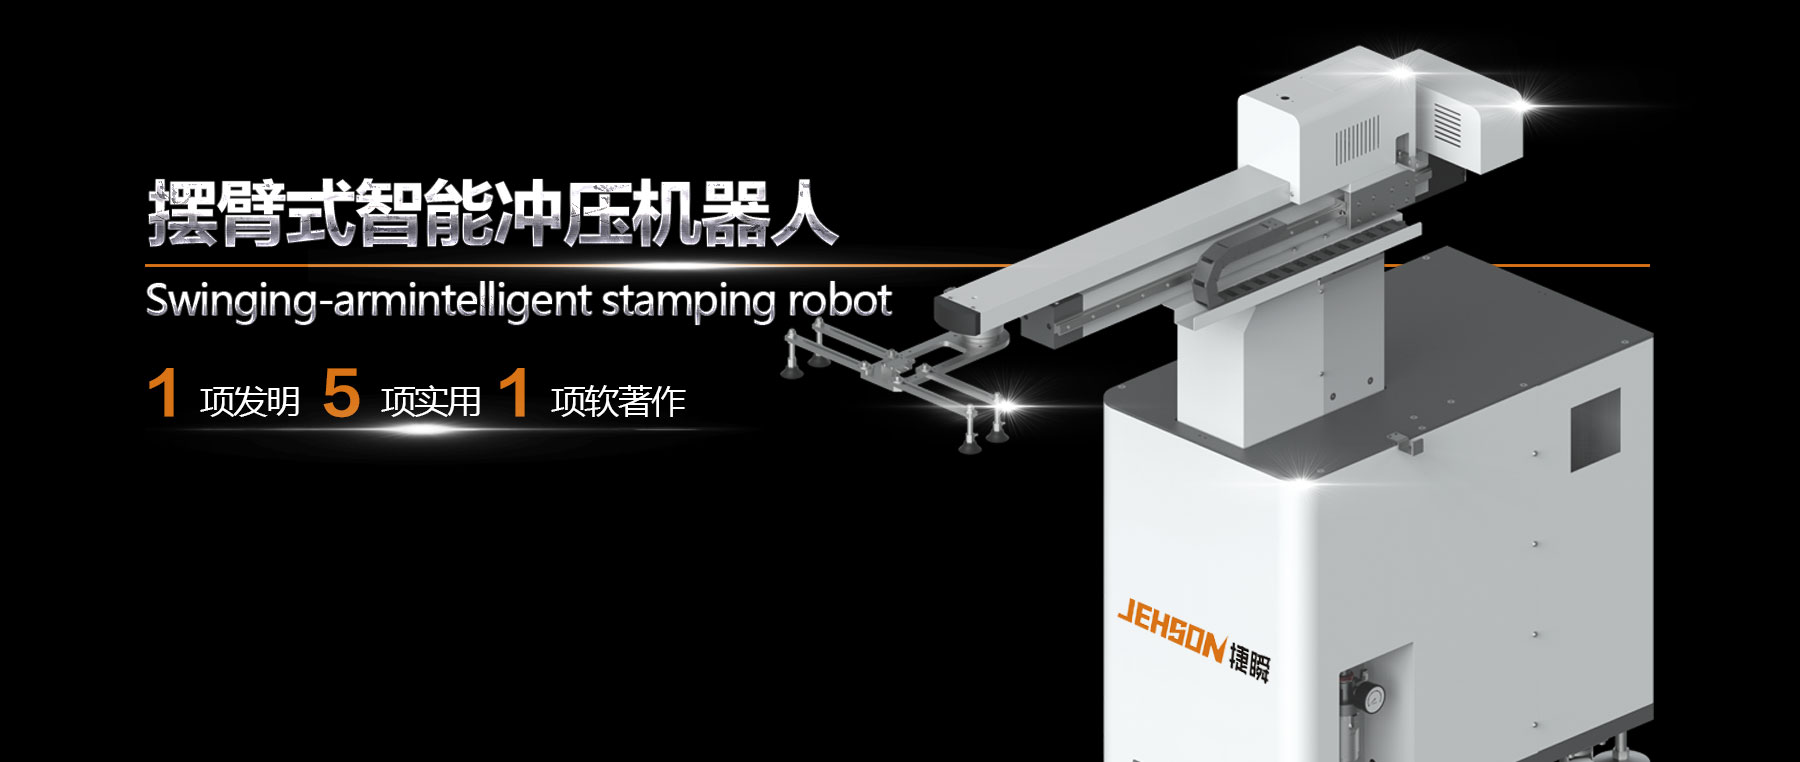 唐山工业新动力——摆臂式智能冲压机器人